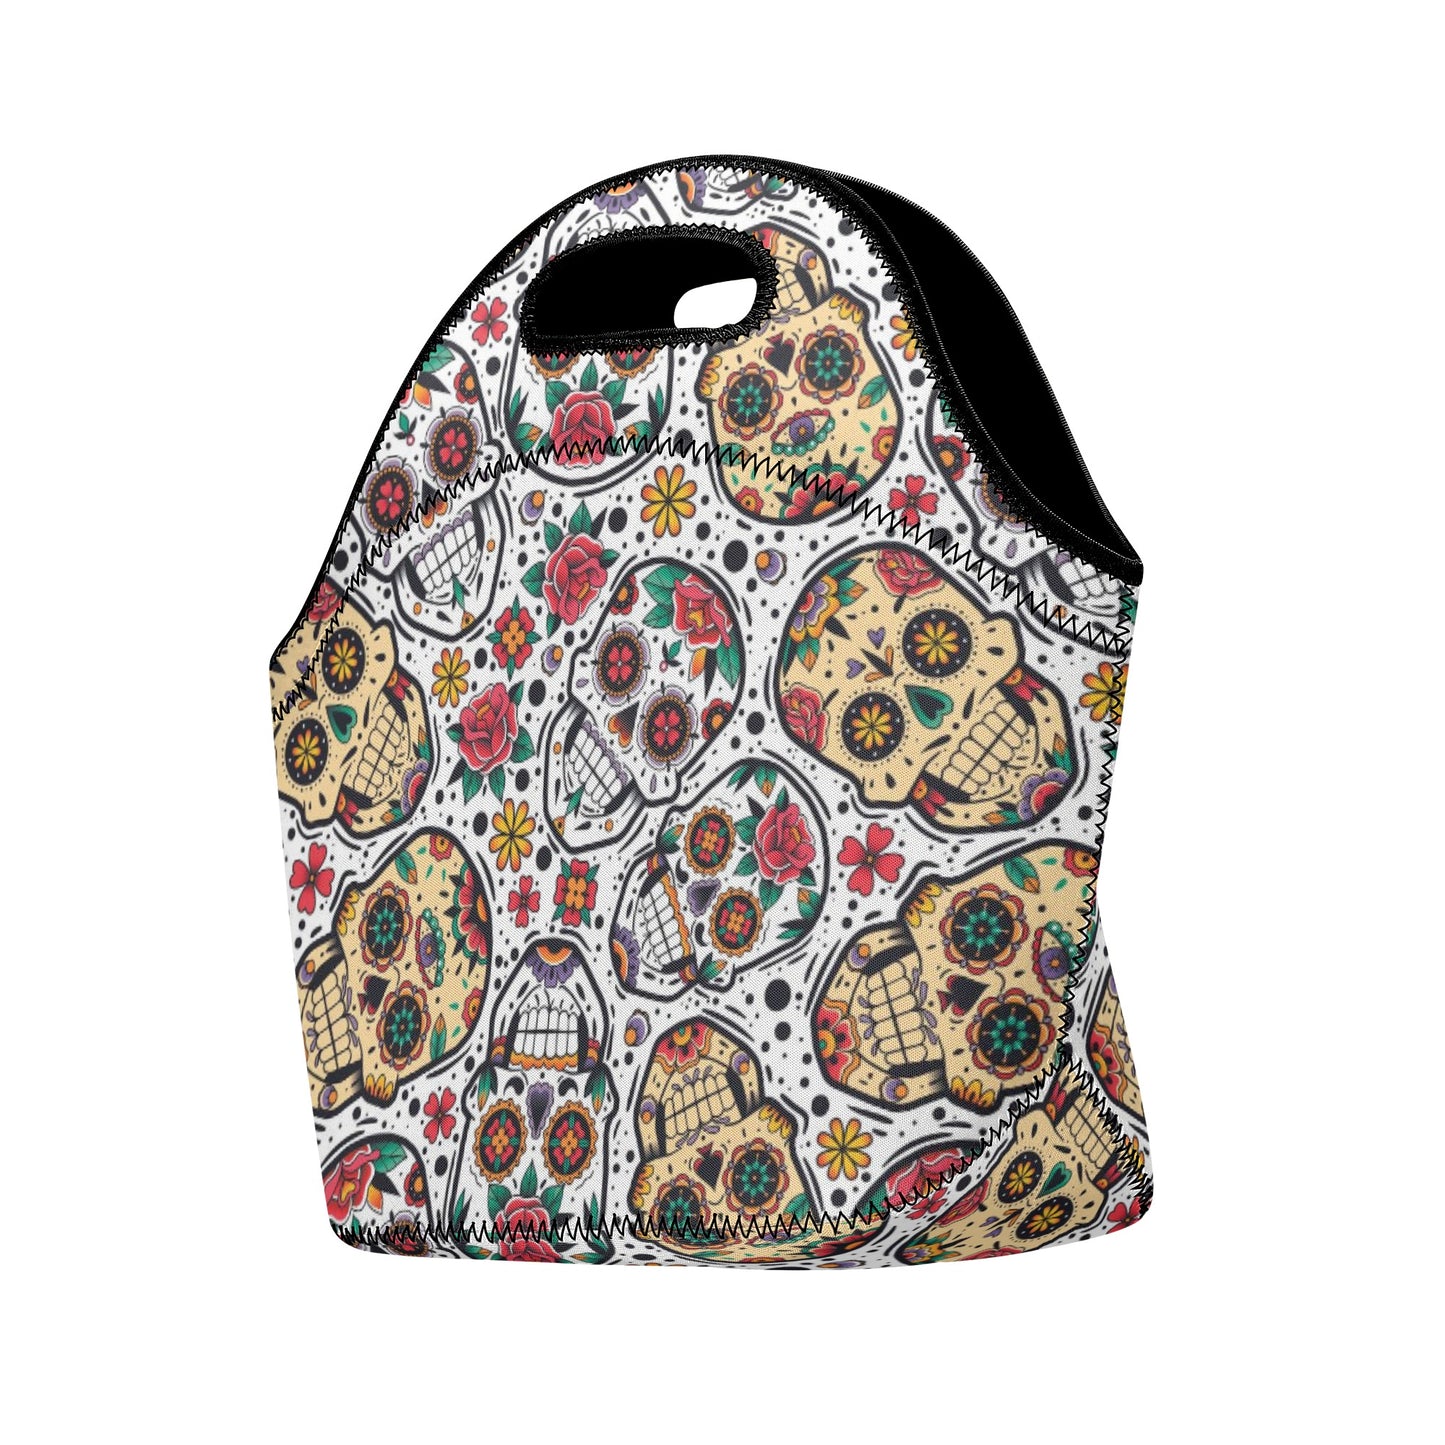 Sugar skull Halloween pattern New Neoprene Lunch Bag